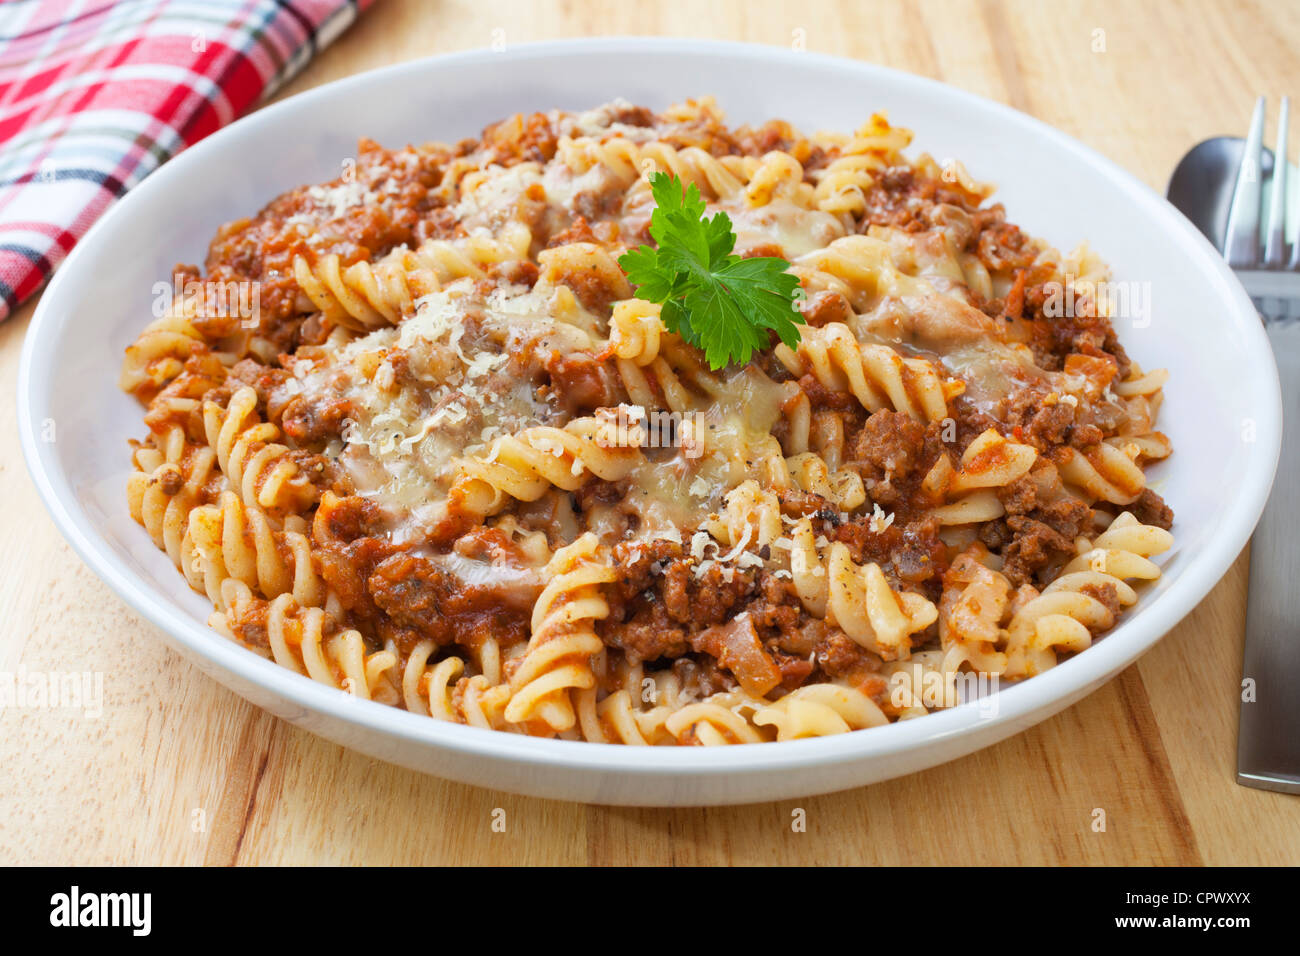 Fusili pasta al forno con ragù alla bolognese, mozzarella e scaglie di parmigiano Foto Stock